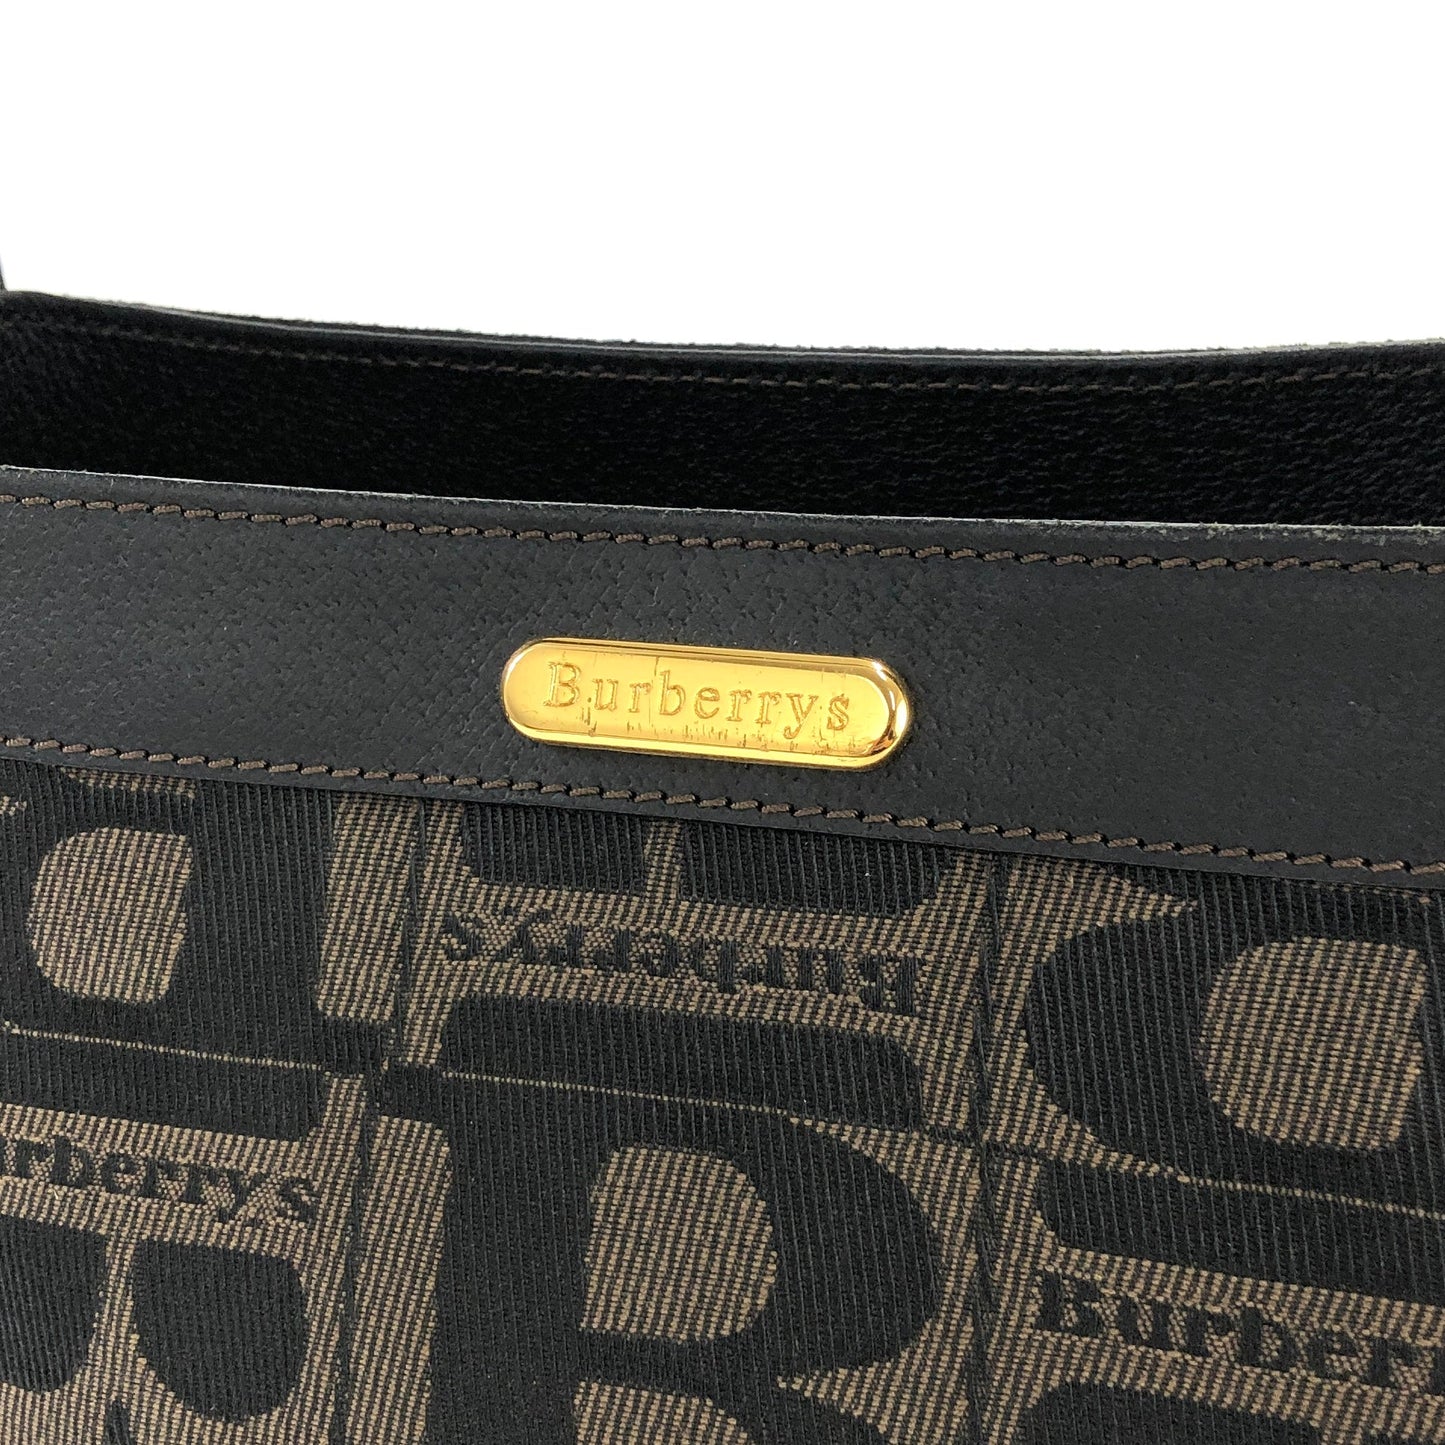 Burberrys Logo Patterned Jacquard Shoulder Bag Brown Vintage Old i8tw8c